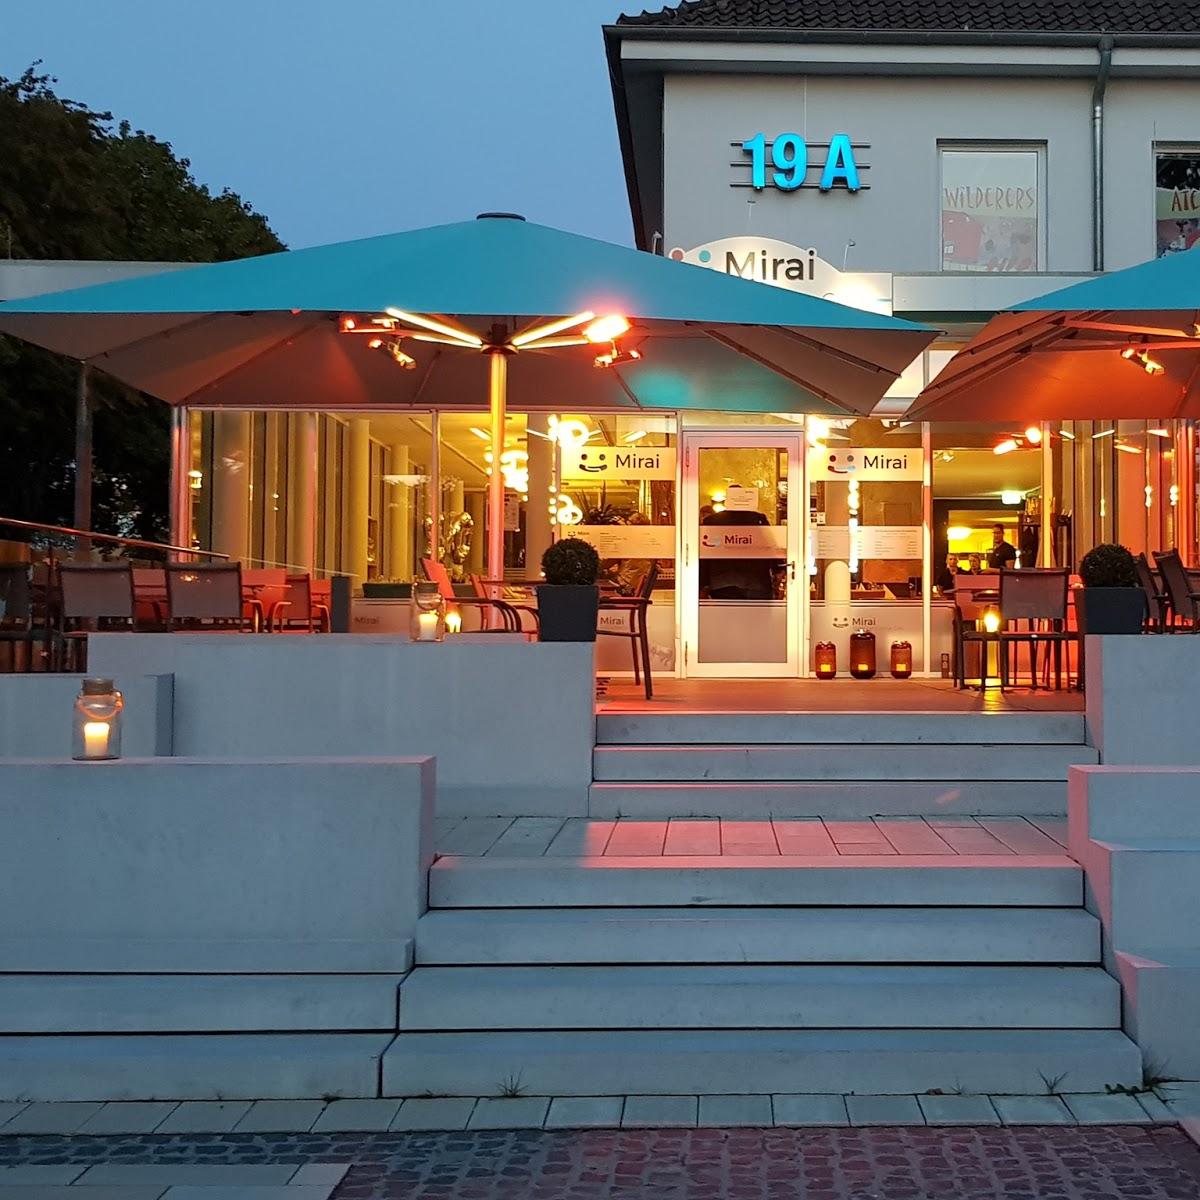 Restaurant "Mirai" in  Hildesheim